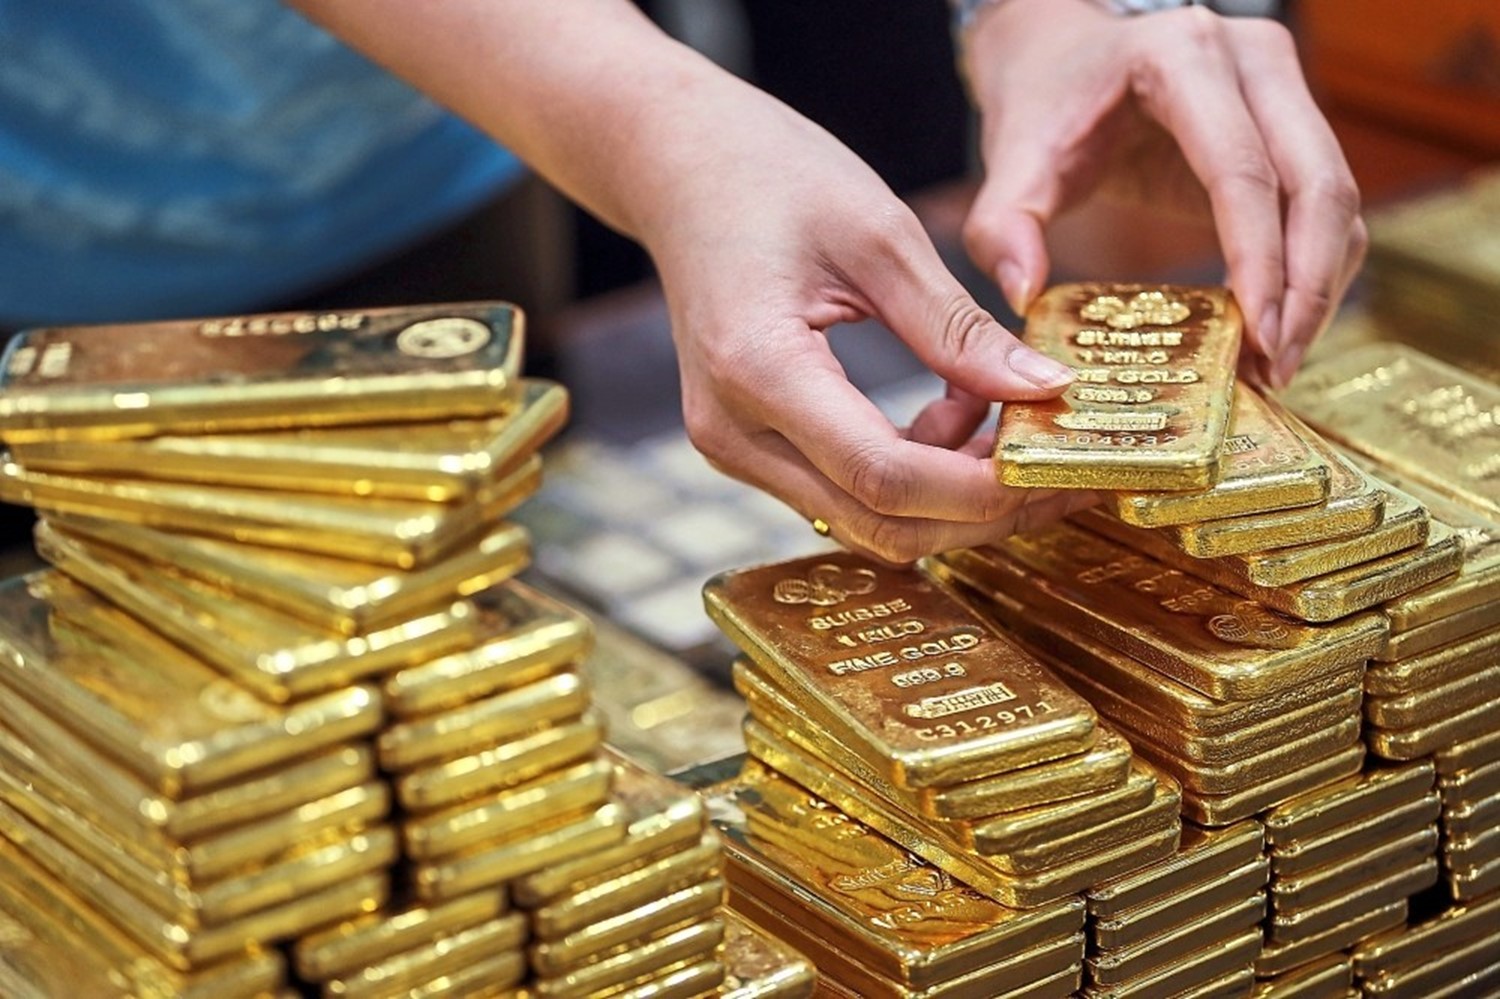 "يونيو الخير 2020" كشف جديد للذهب في مصر باحتياطي يزيد عن مليون أوقية ووزارة البترول تكشف بالتفاصيل 2